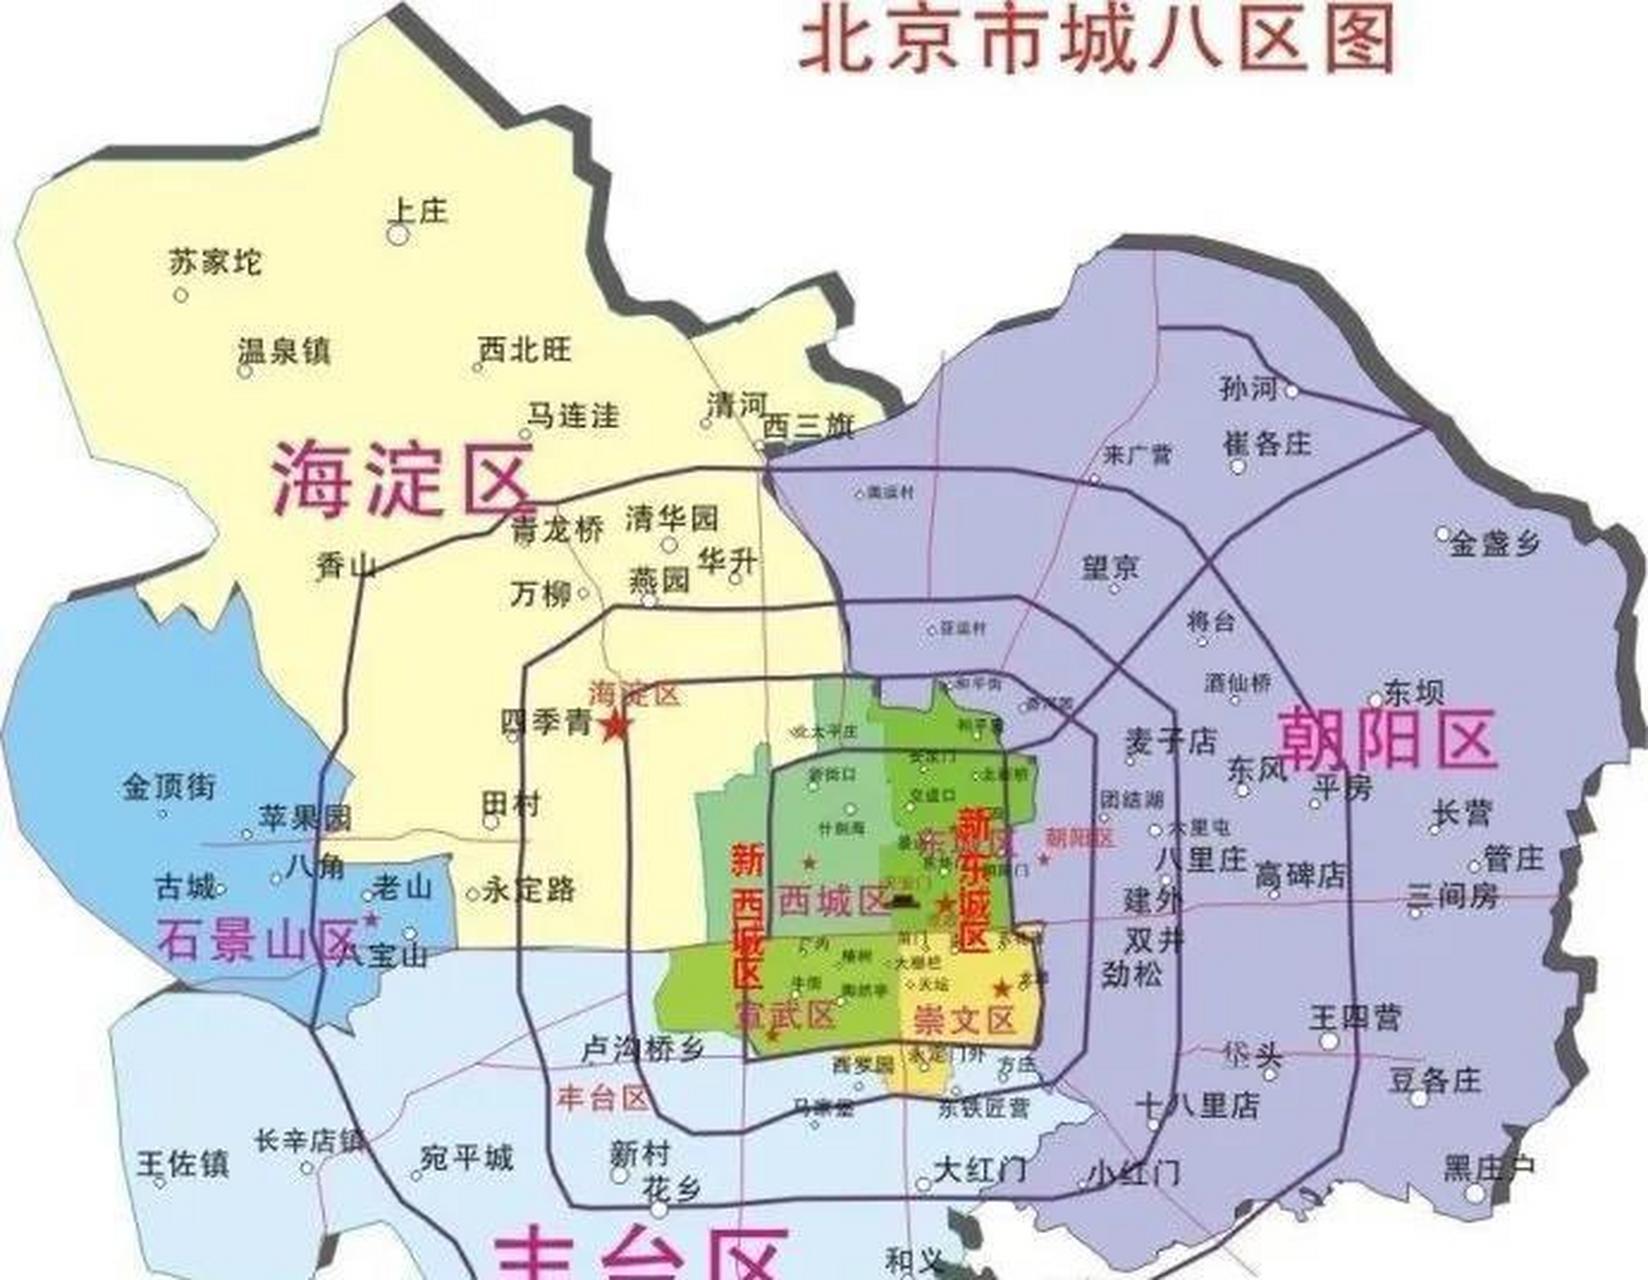 北京2010年合并崇文区和东城区改为东城区,舍弃了崇文这个名字;合并